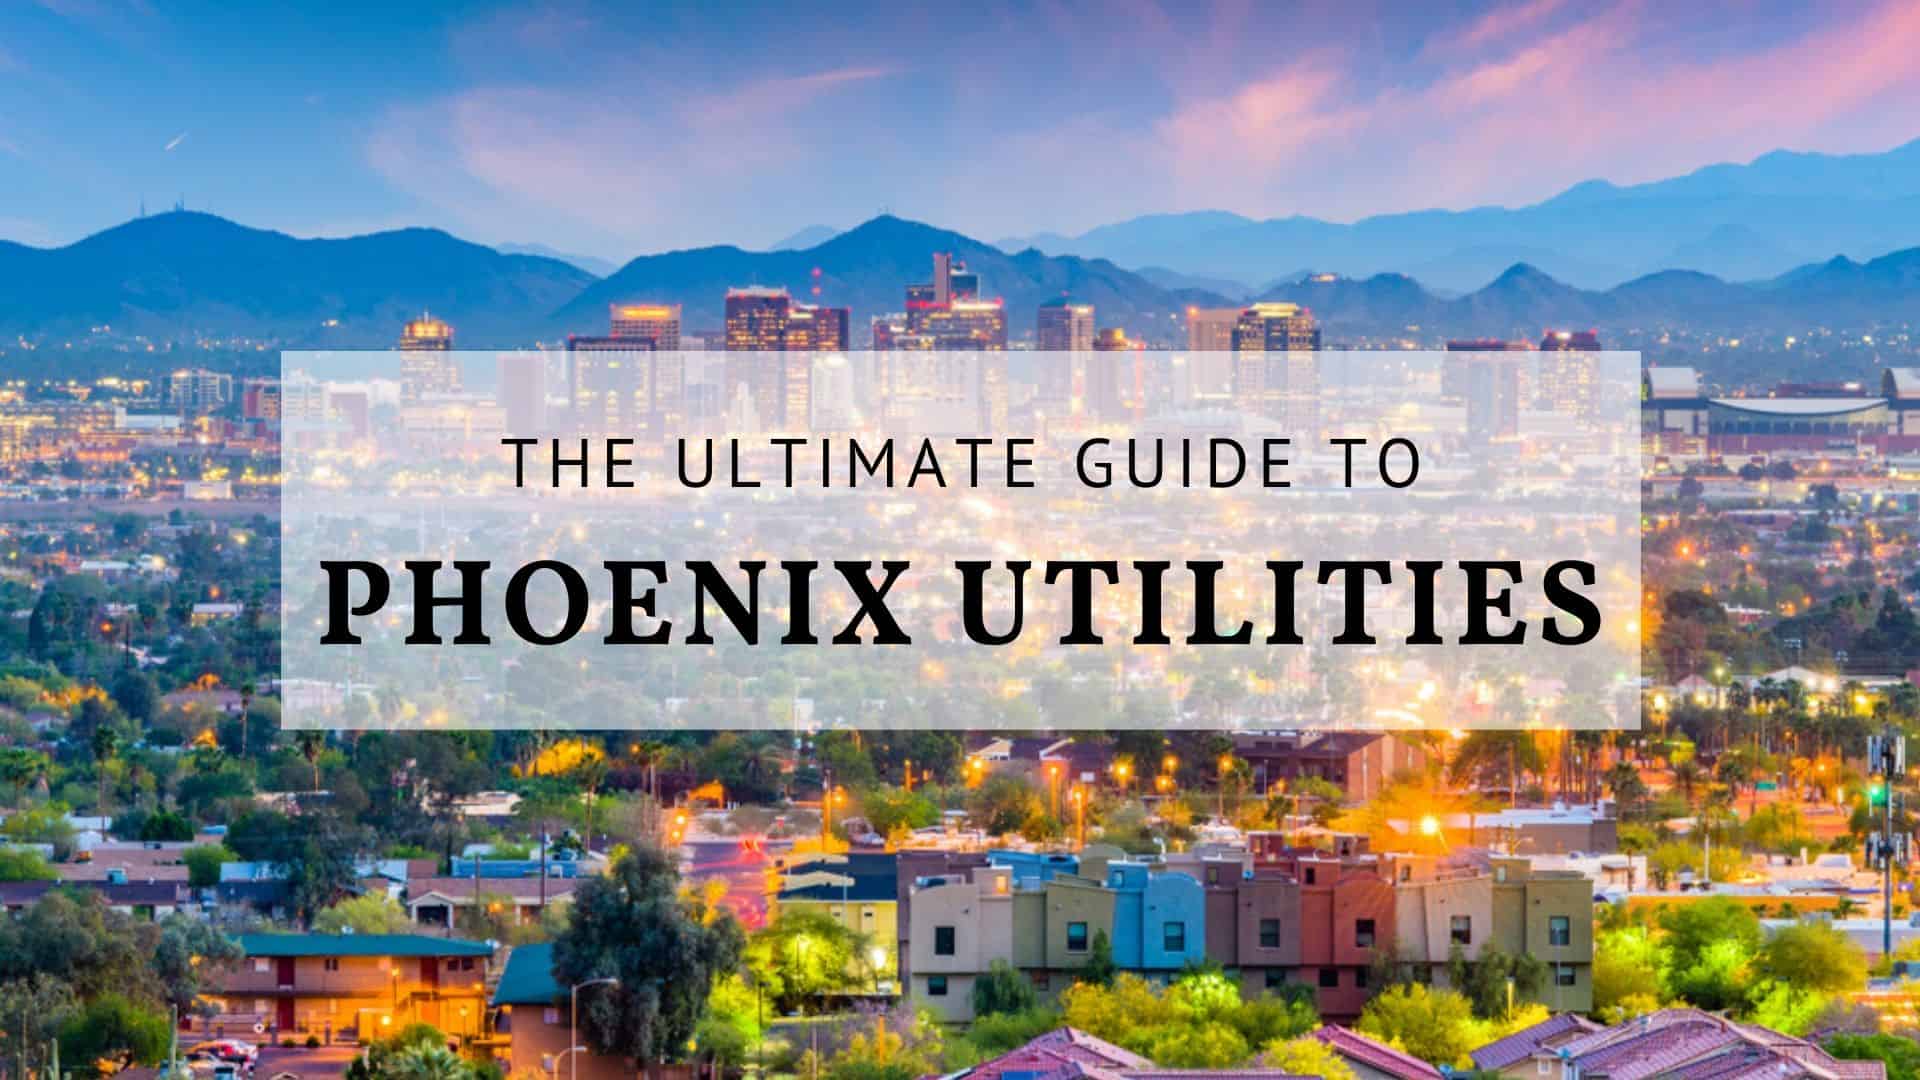 Phoenix Utilities